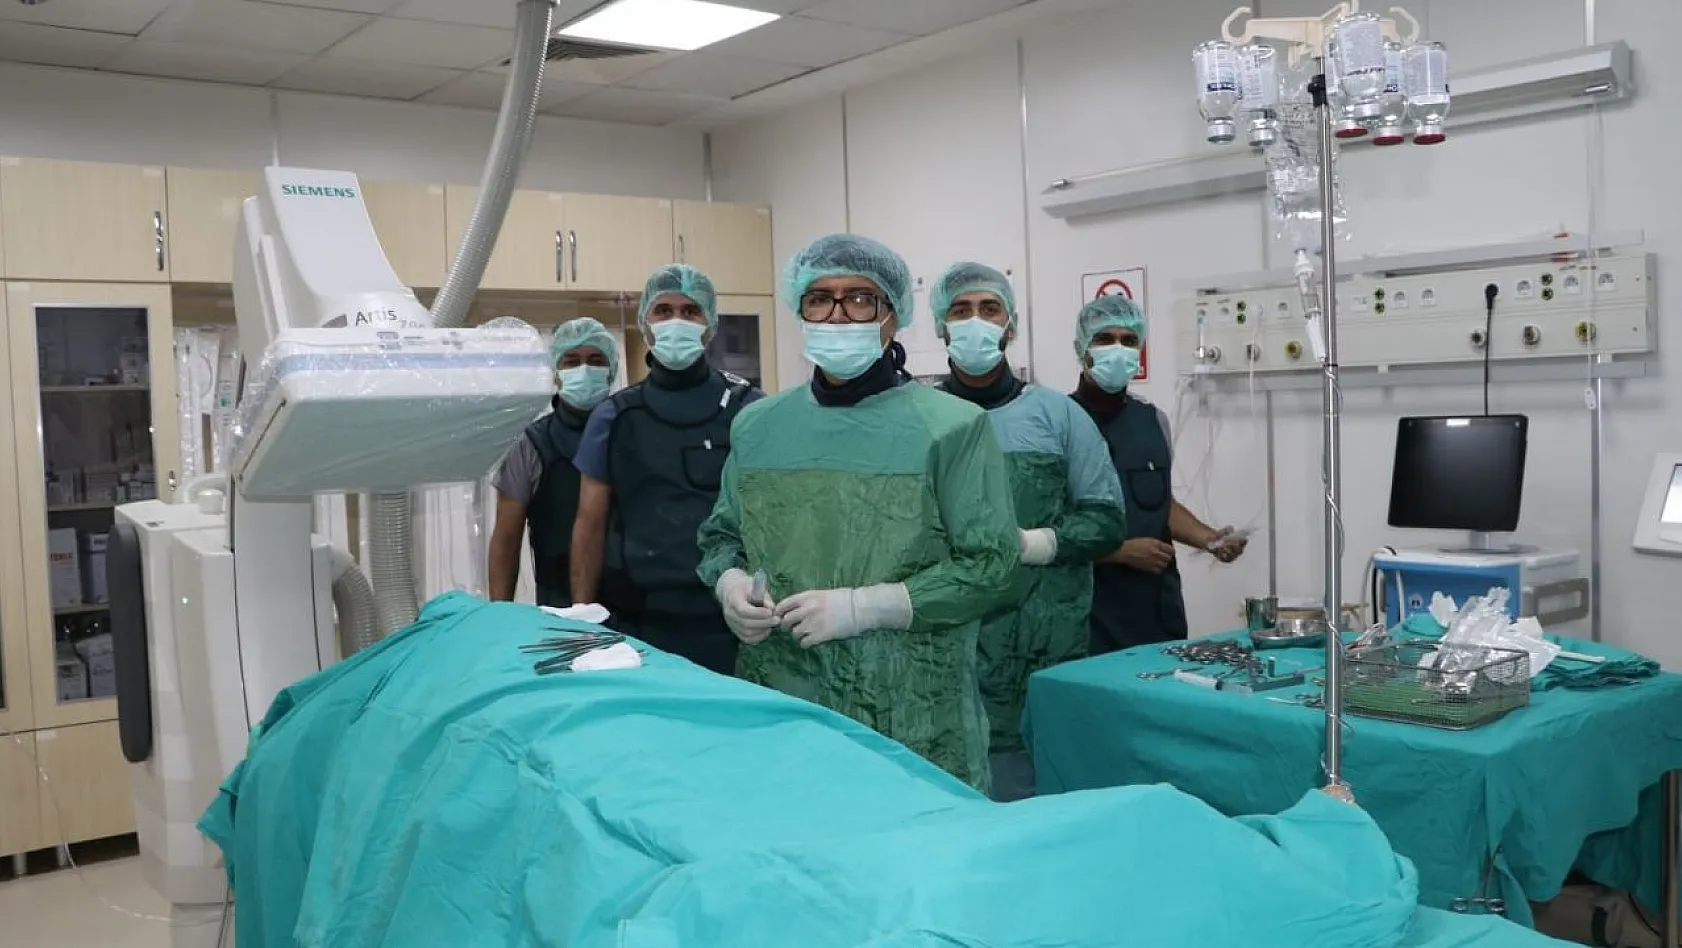 Bingöl Devlet Hastanesinde ilk kez kalıcı kalp pili takıldı